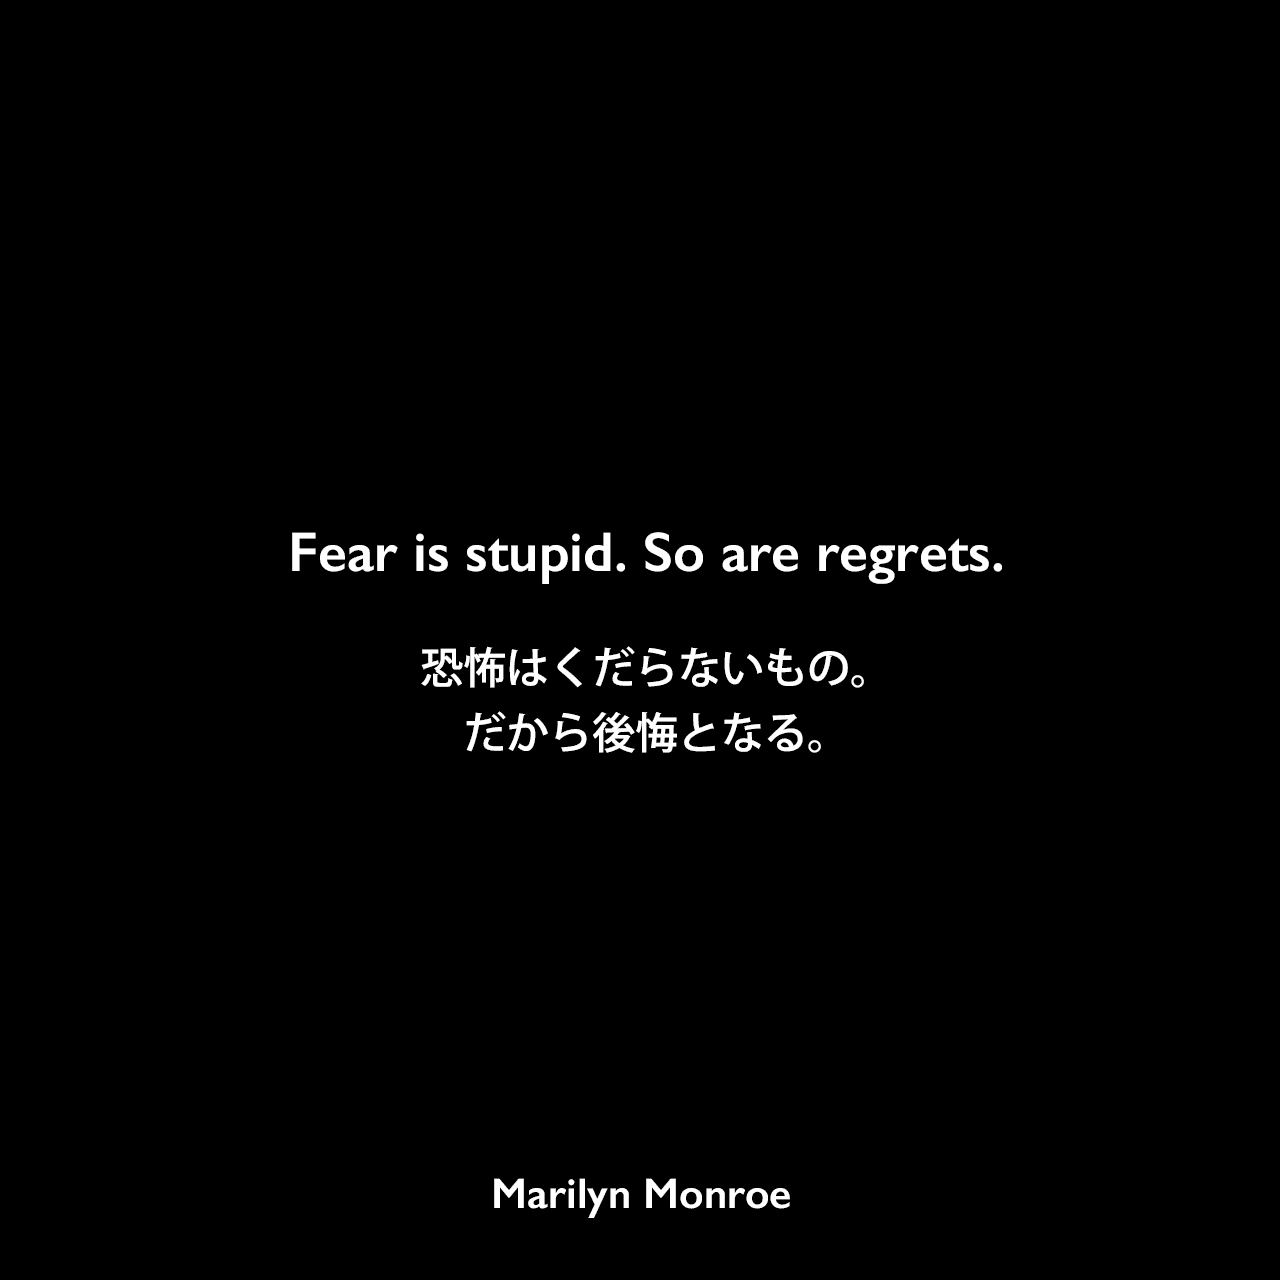 Fear is stupid. So are regrets.恐怖はくだらないもの。だから後悔となる。Marilyn Monroe